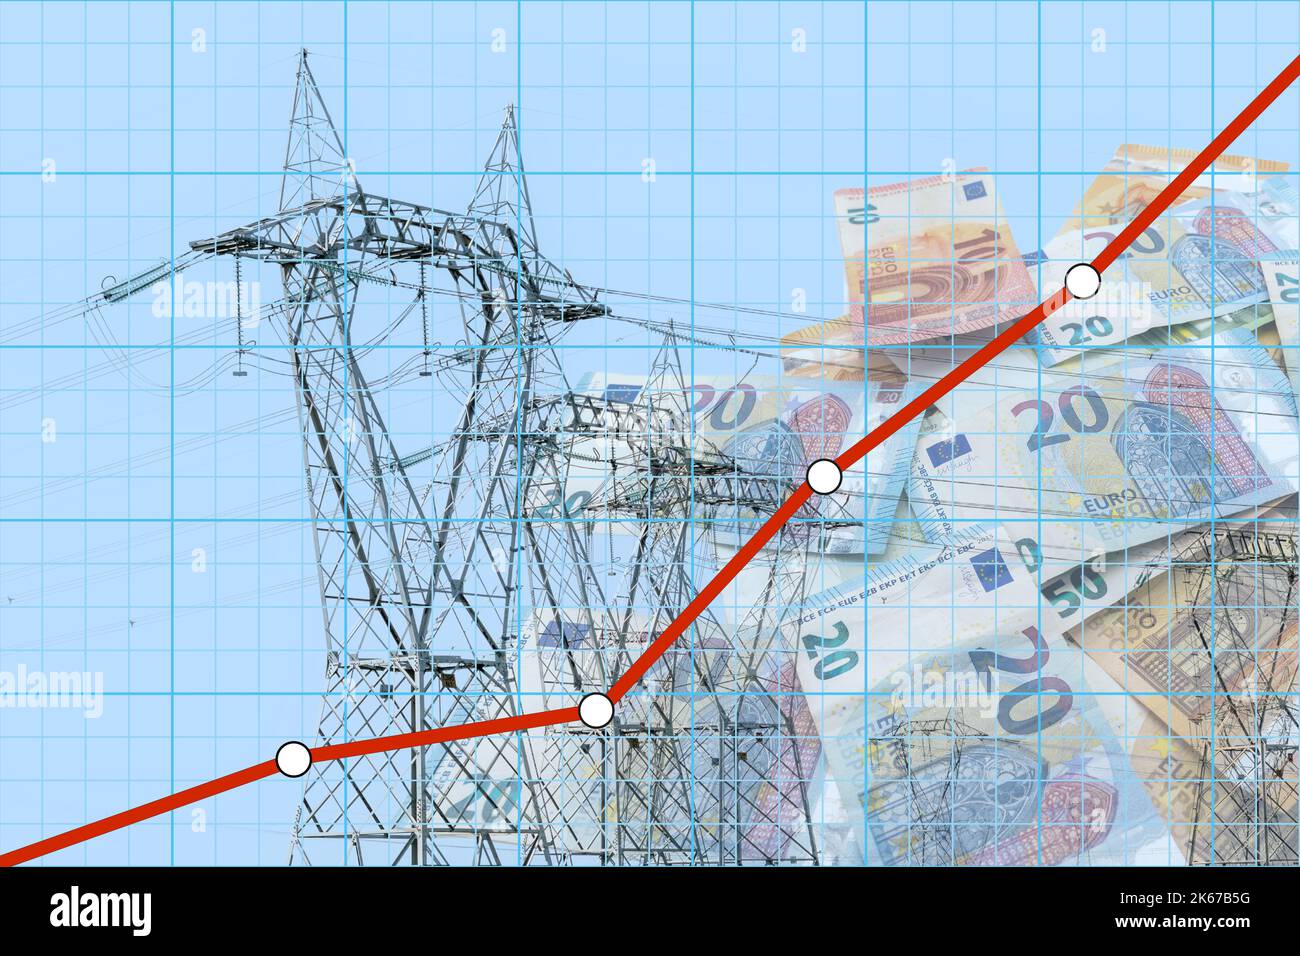 Résumé graphique financier avec prix de l'électricité de ligne en hausse sur les billets en euros et les pylônes d'électricité. Concept augmentation exponentielle des coûts énergétiques Banque D'Images